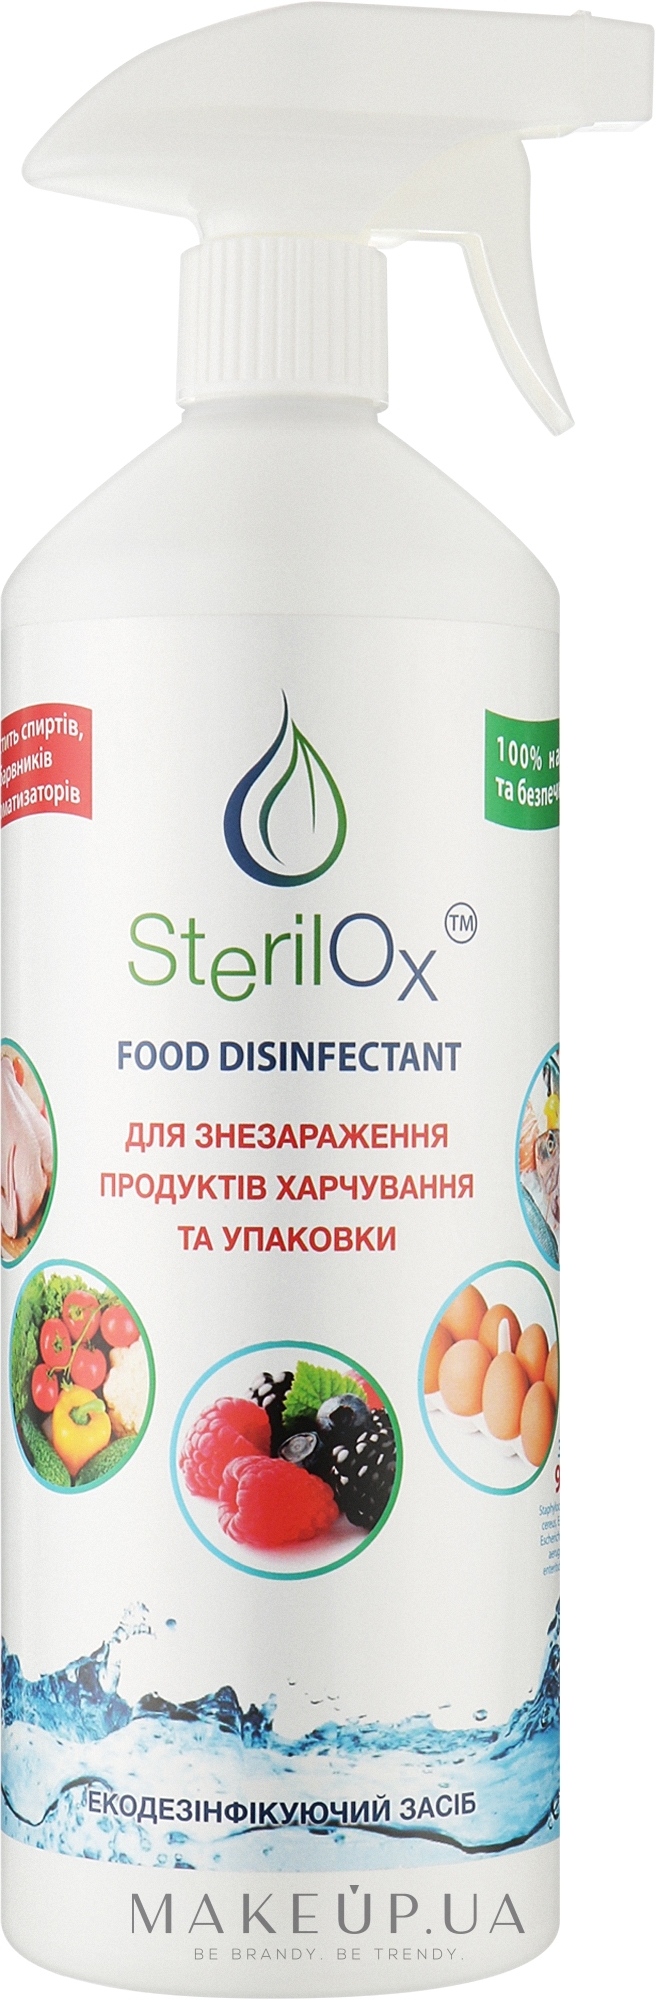 Средство дезинфицирующее для обеззараживания продуктов питания и упаковки - Sterilox Eco Food Disinfectant — фото 1000ml